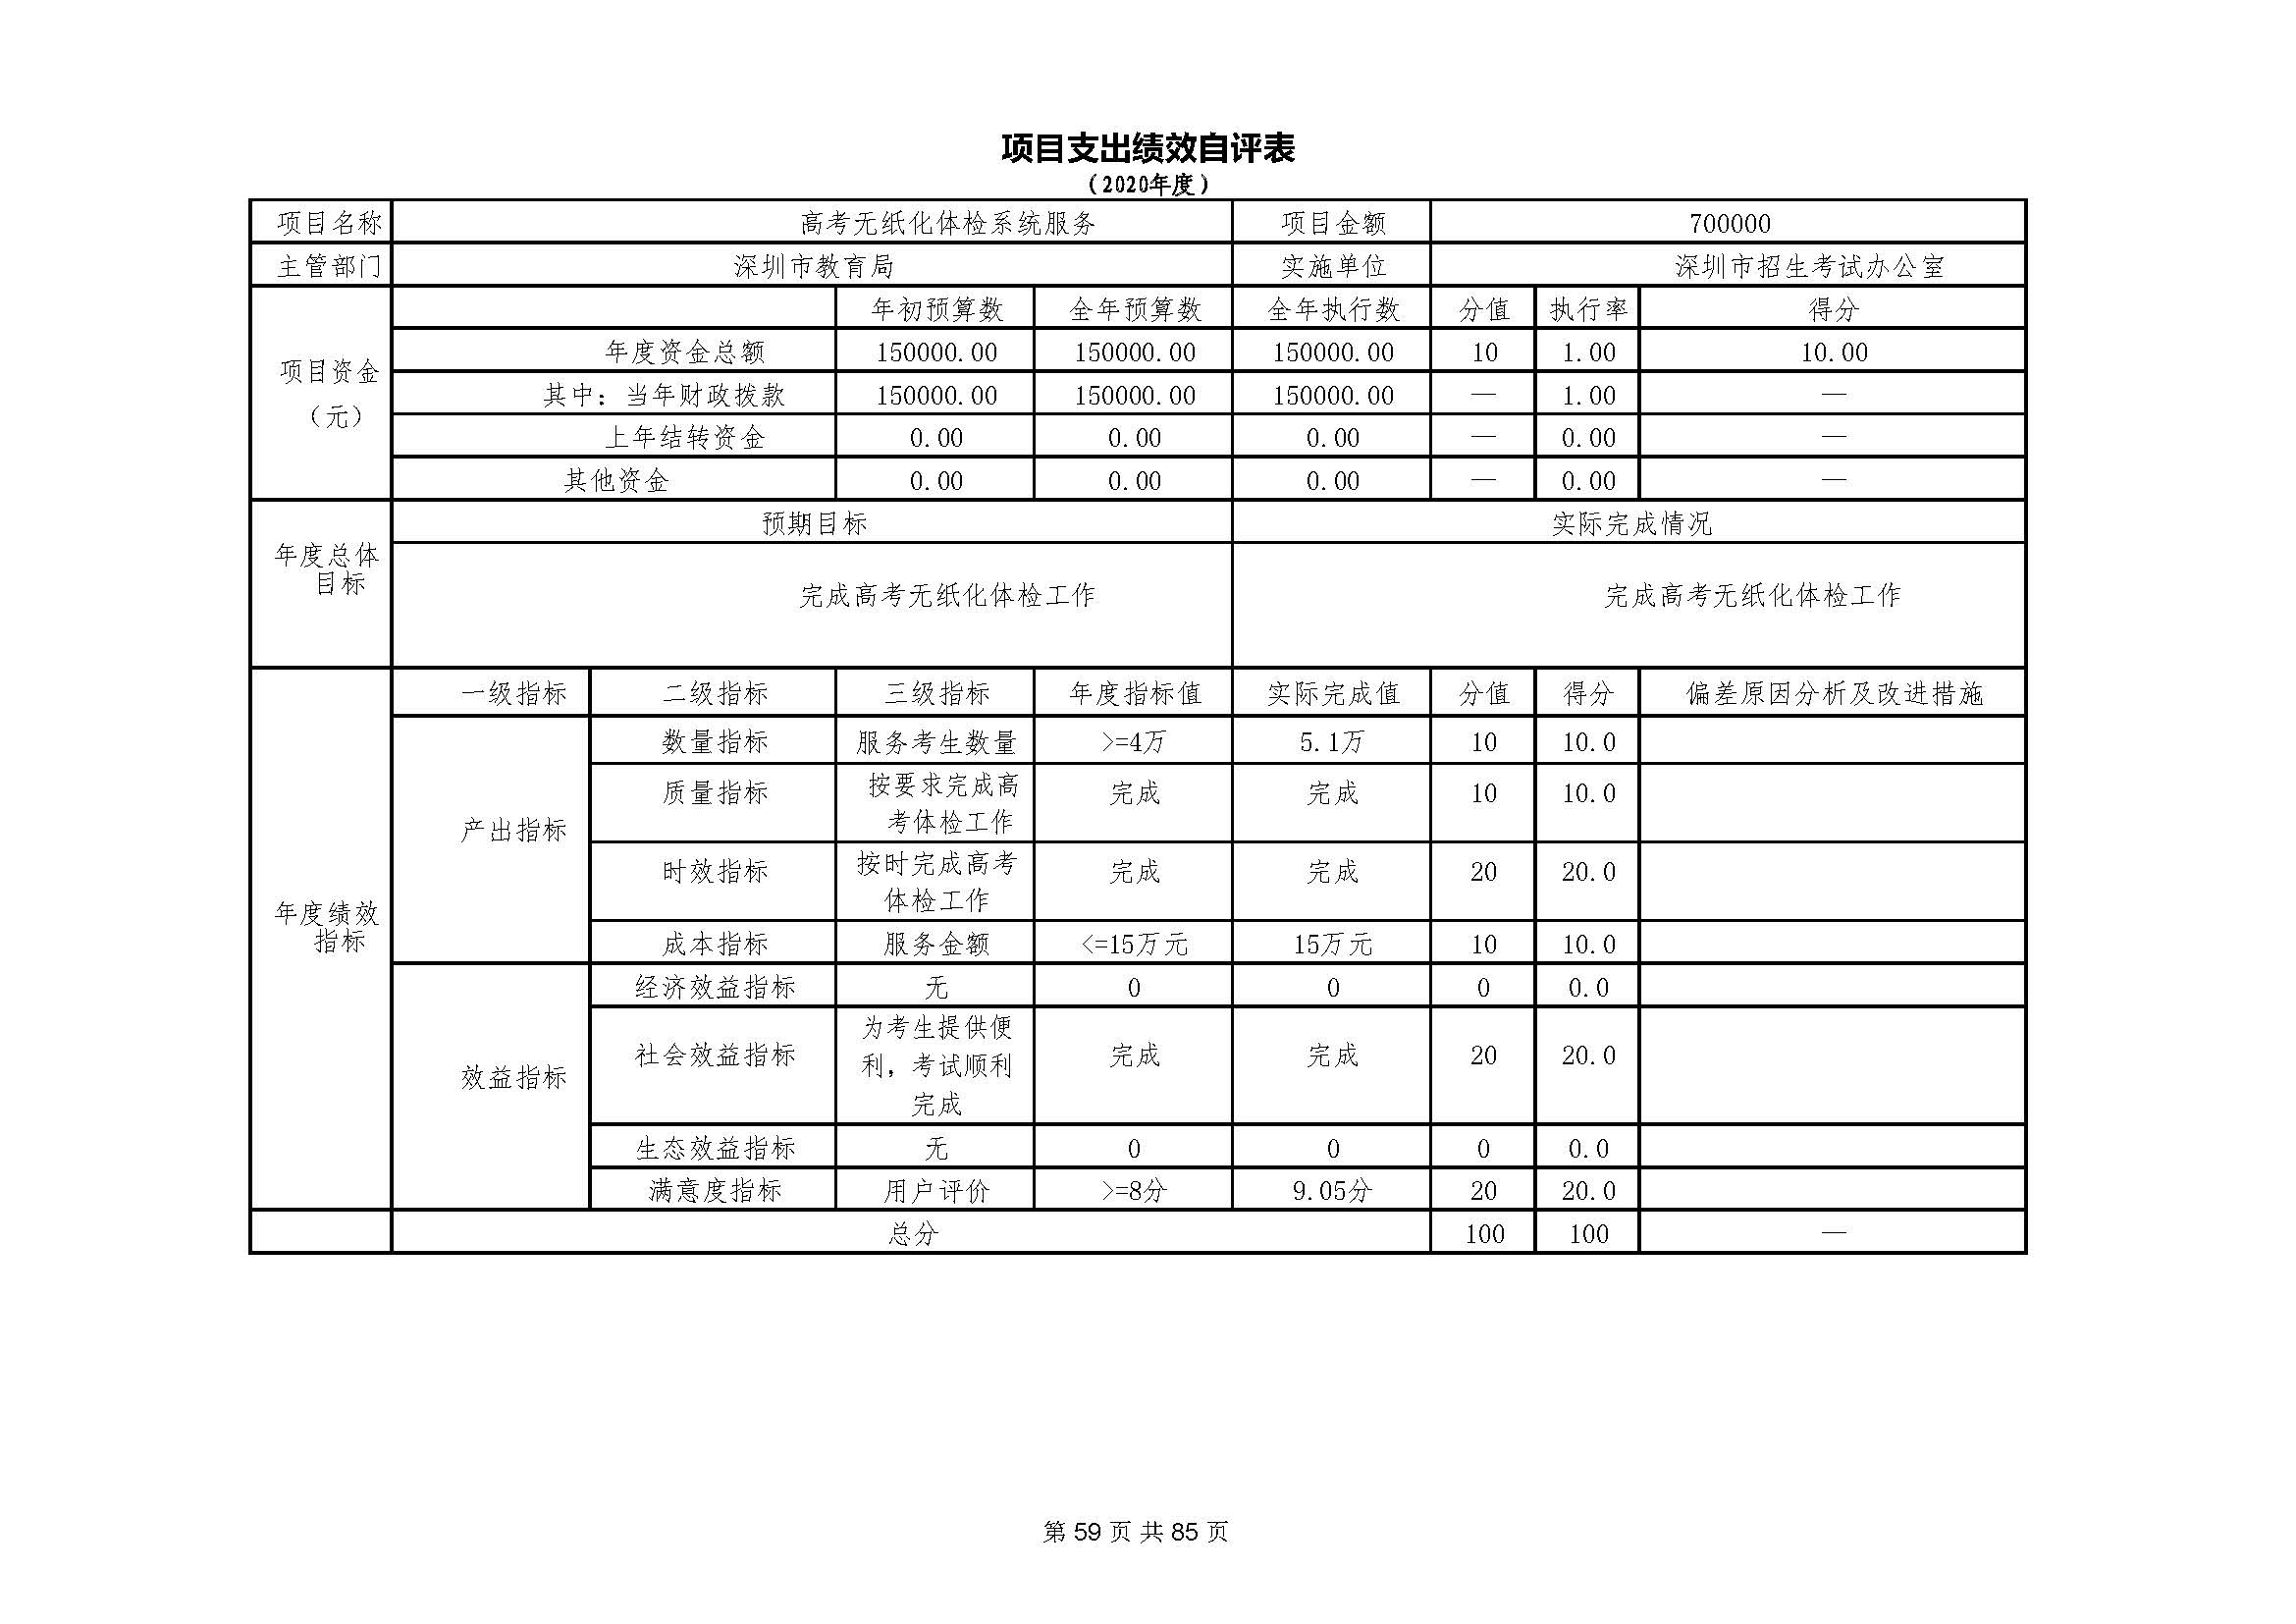 深圳市招生考试办公室2020年度部门决算_页面_60.jpg